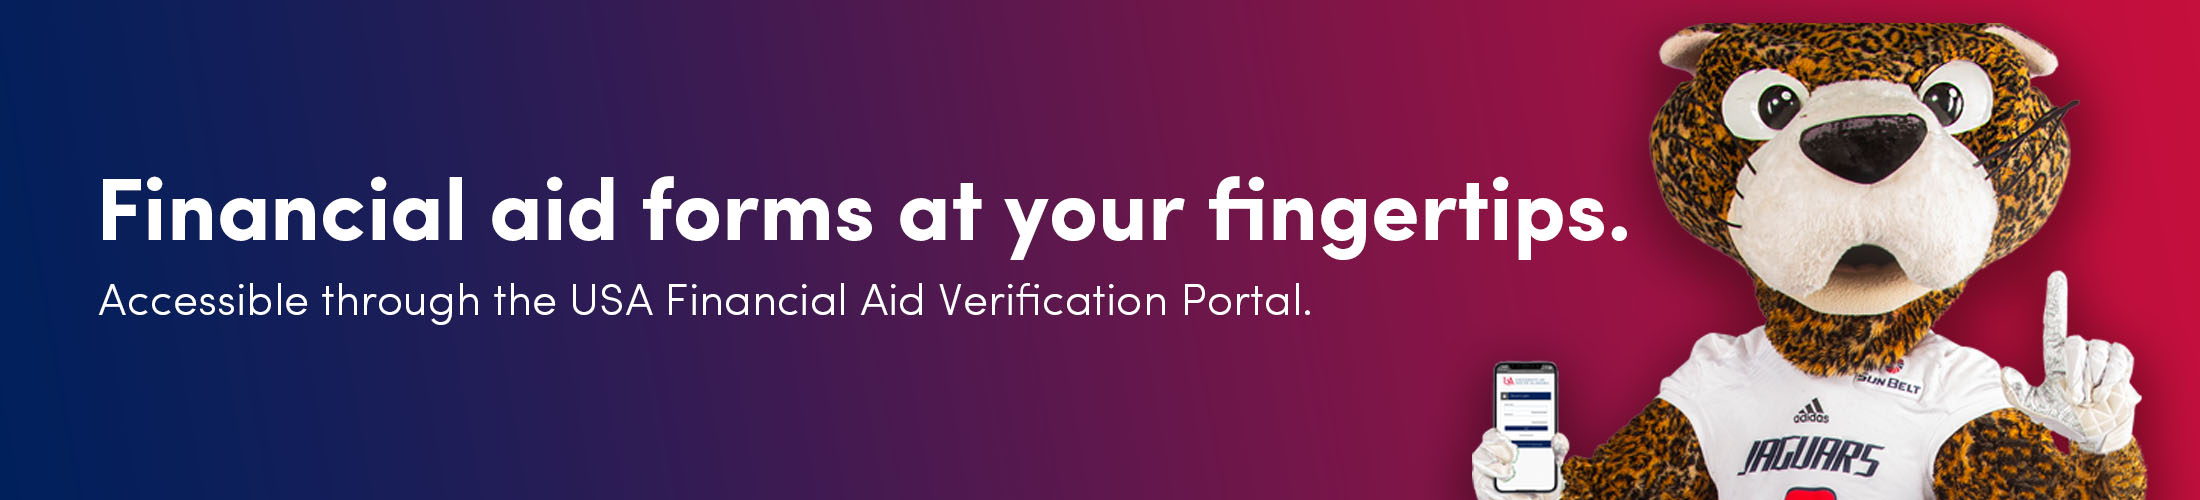 快播视频paw with the text Financial aid forms at your fingertips.